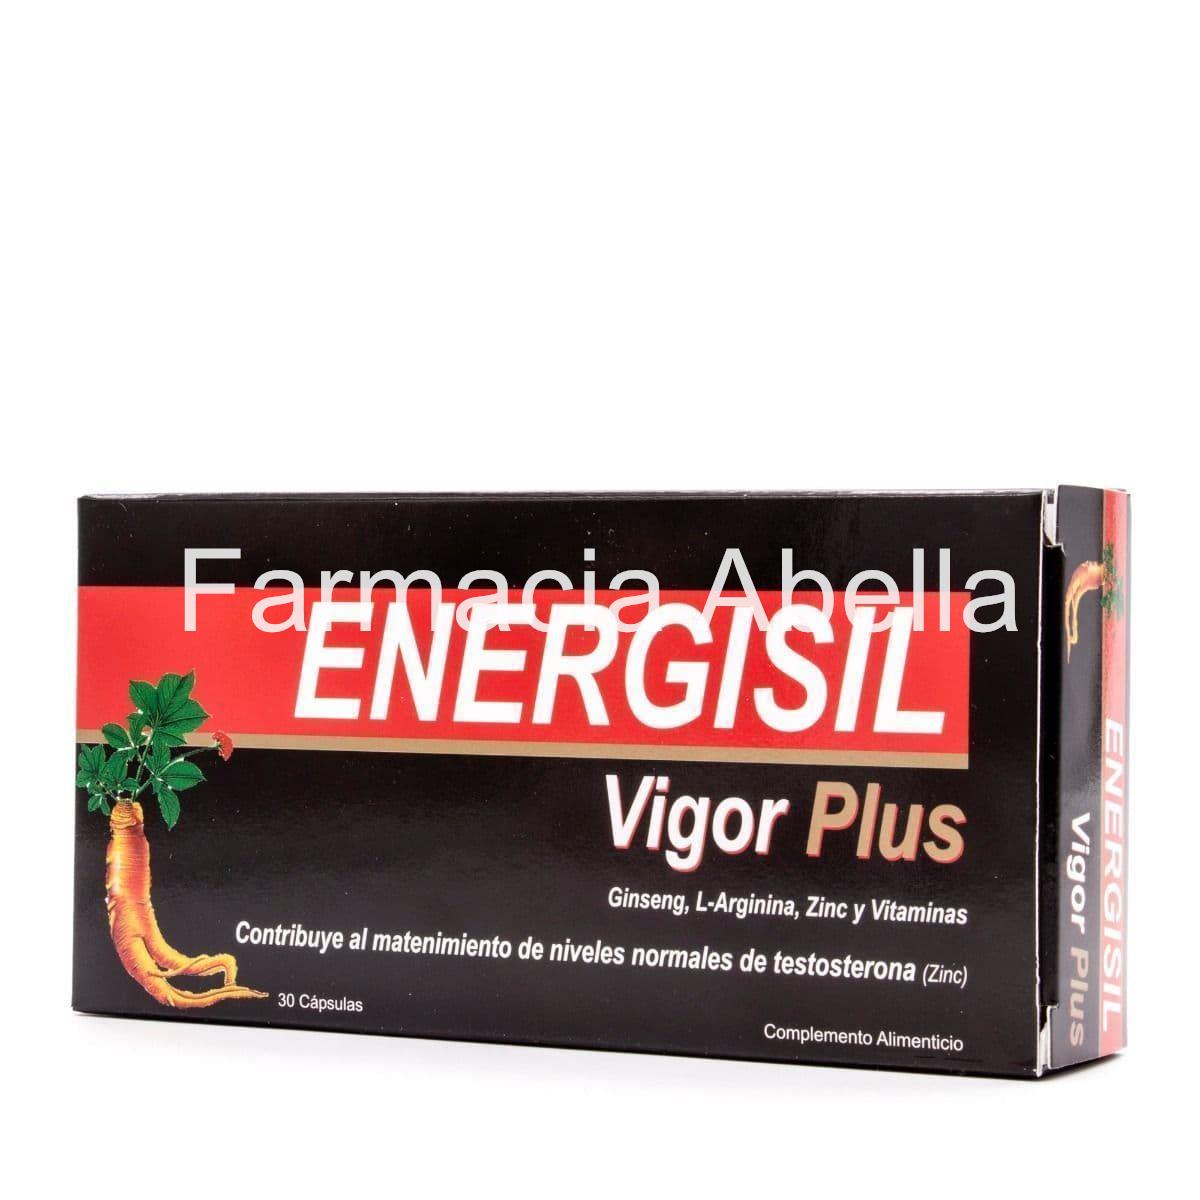 Energisil Vigor Plus con Ginseng y L-Arginina 30 Capsulas - Imagen 1